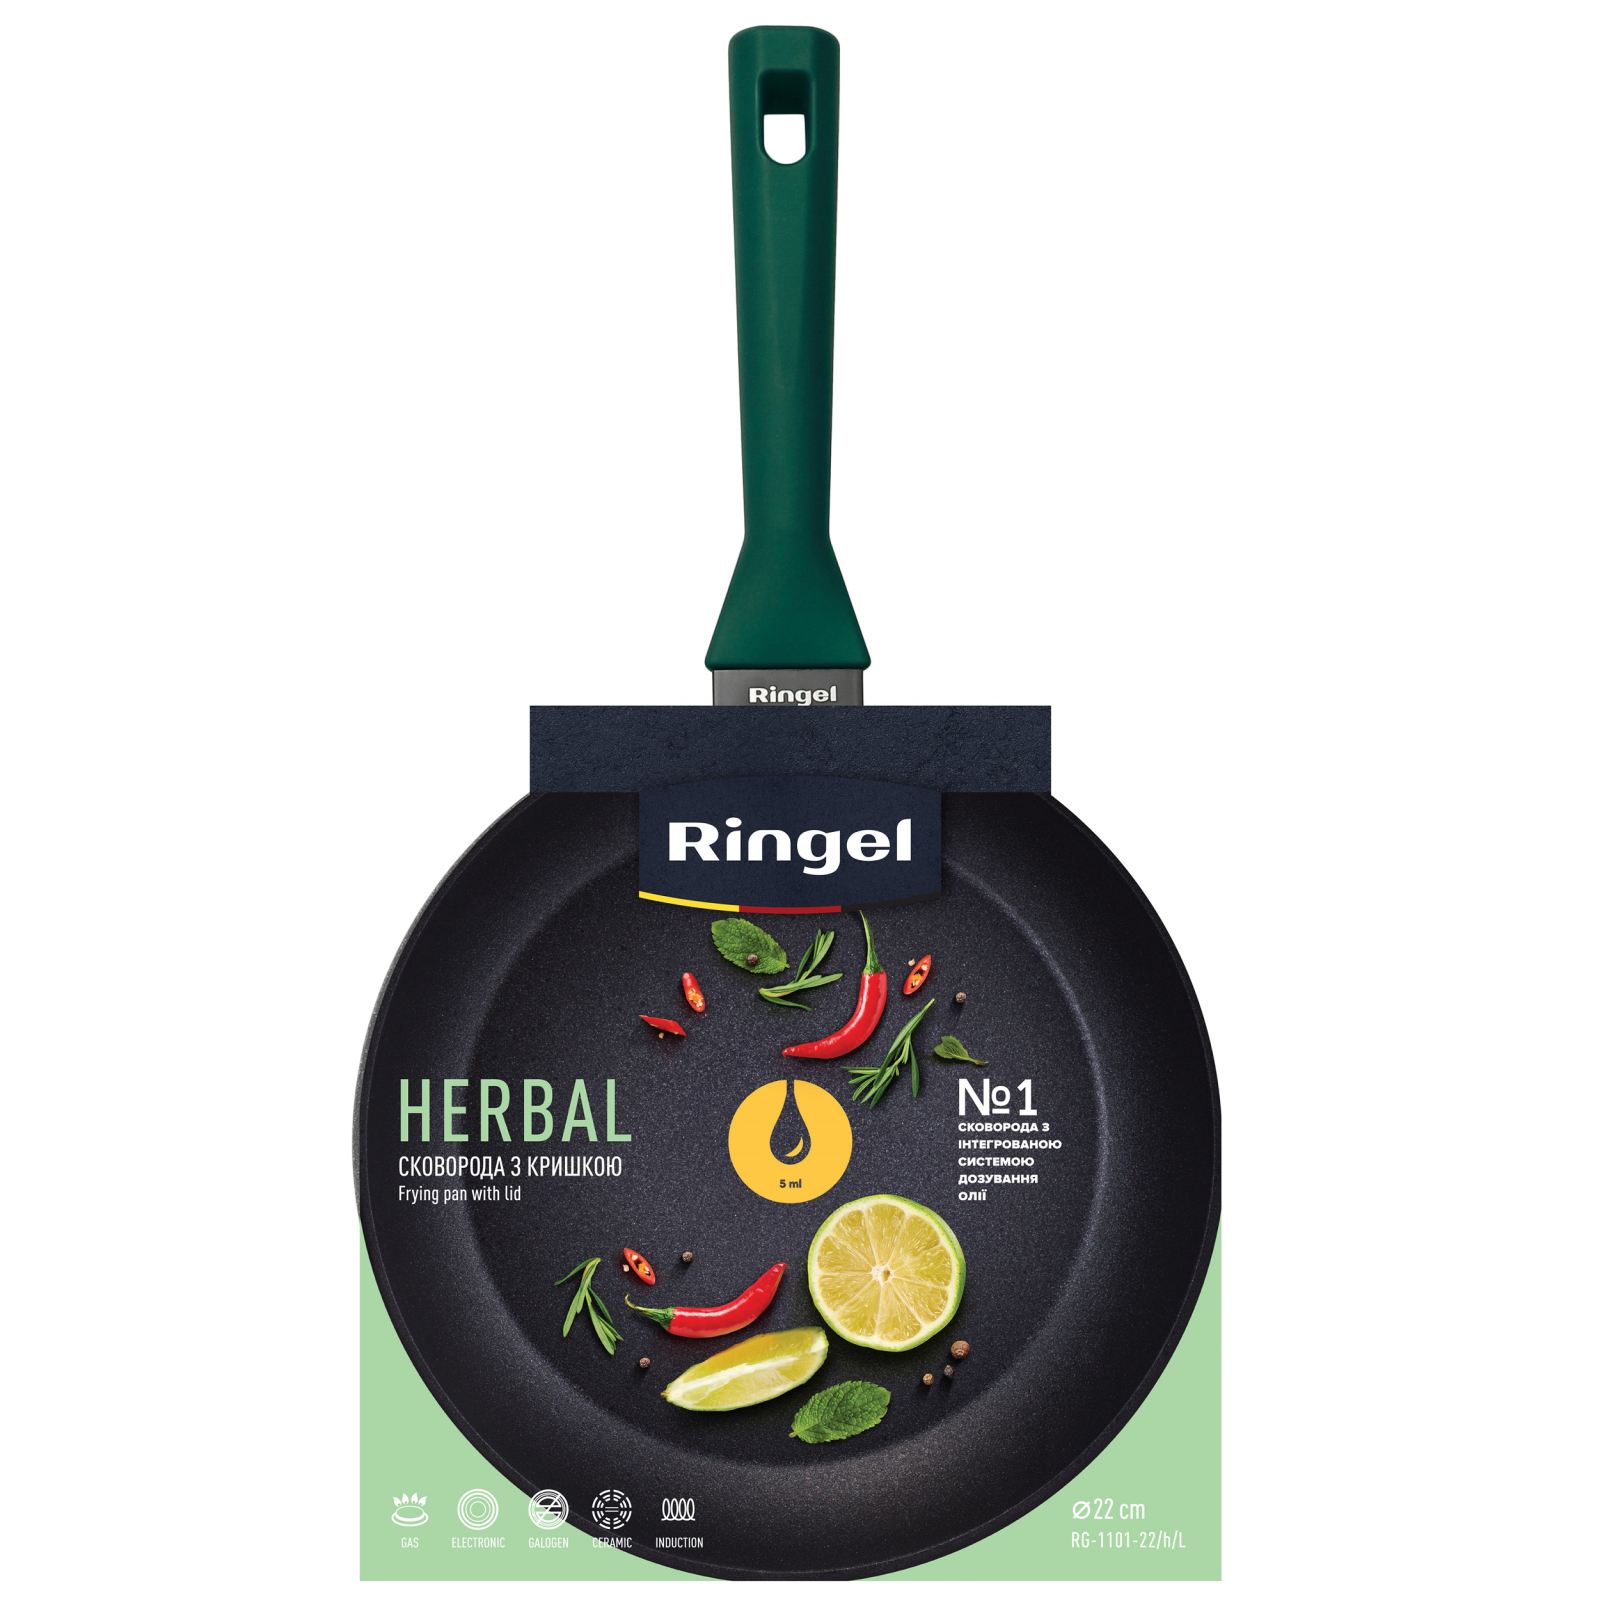 Сковорода Ringel Herbal 24 см (RG-1101-24/h/L) зображення 5